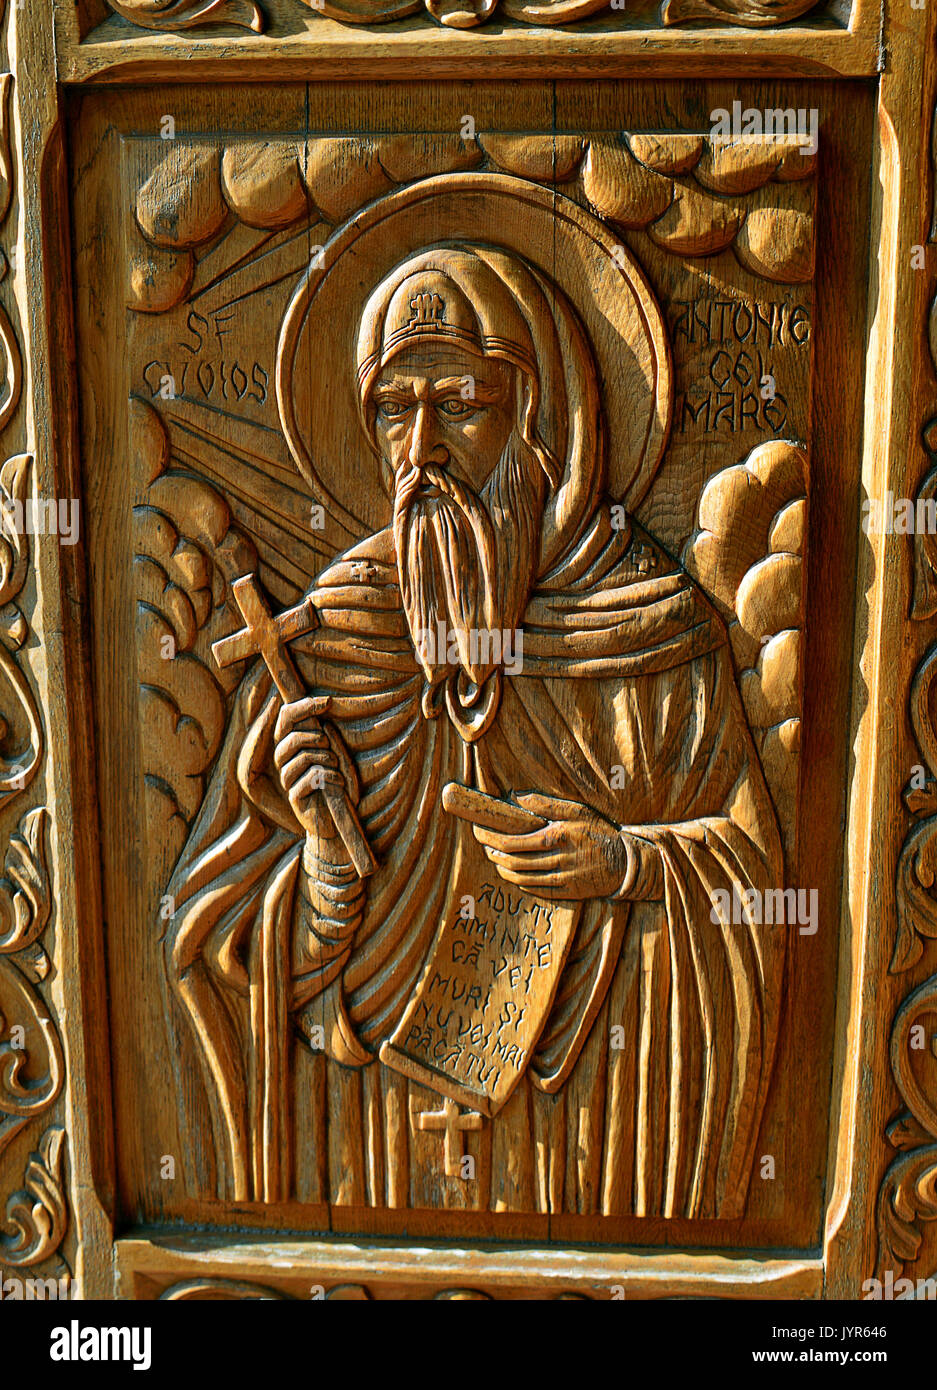 Una talla en madera de San Antonio el Grande, padre del monaquismo, en un palacio del siglo XVI, la puerta de la Iglesia Ortodoxa rumana. Foto de stock